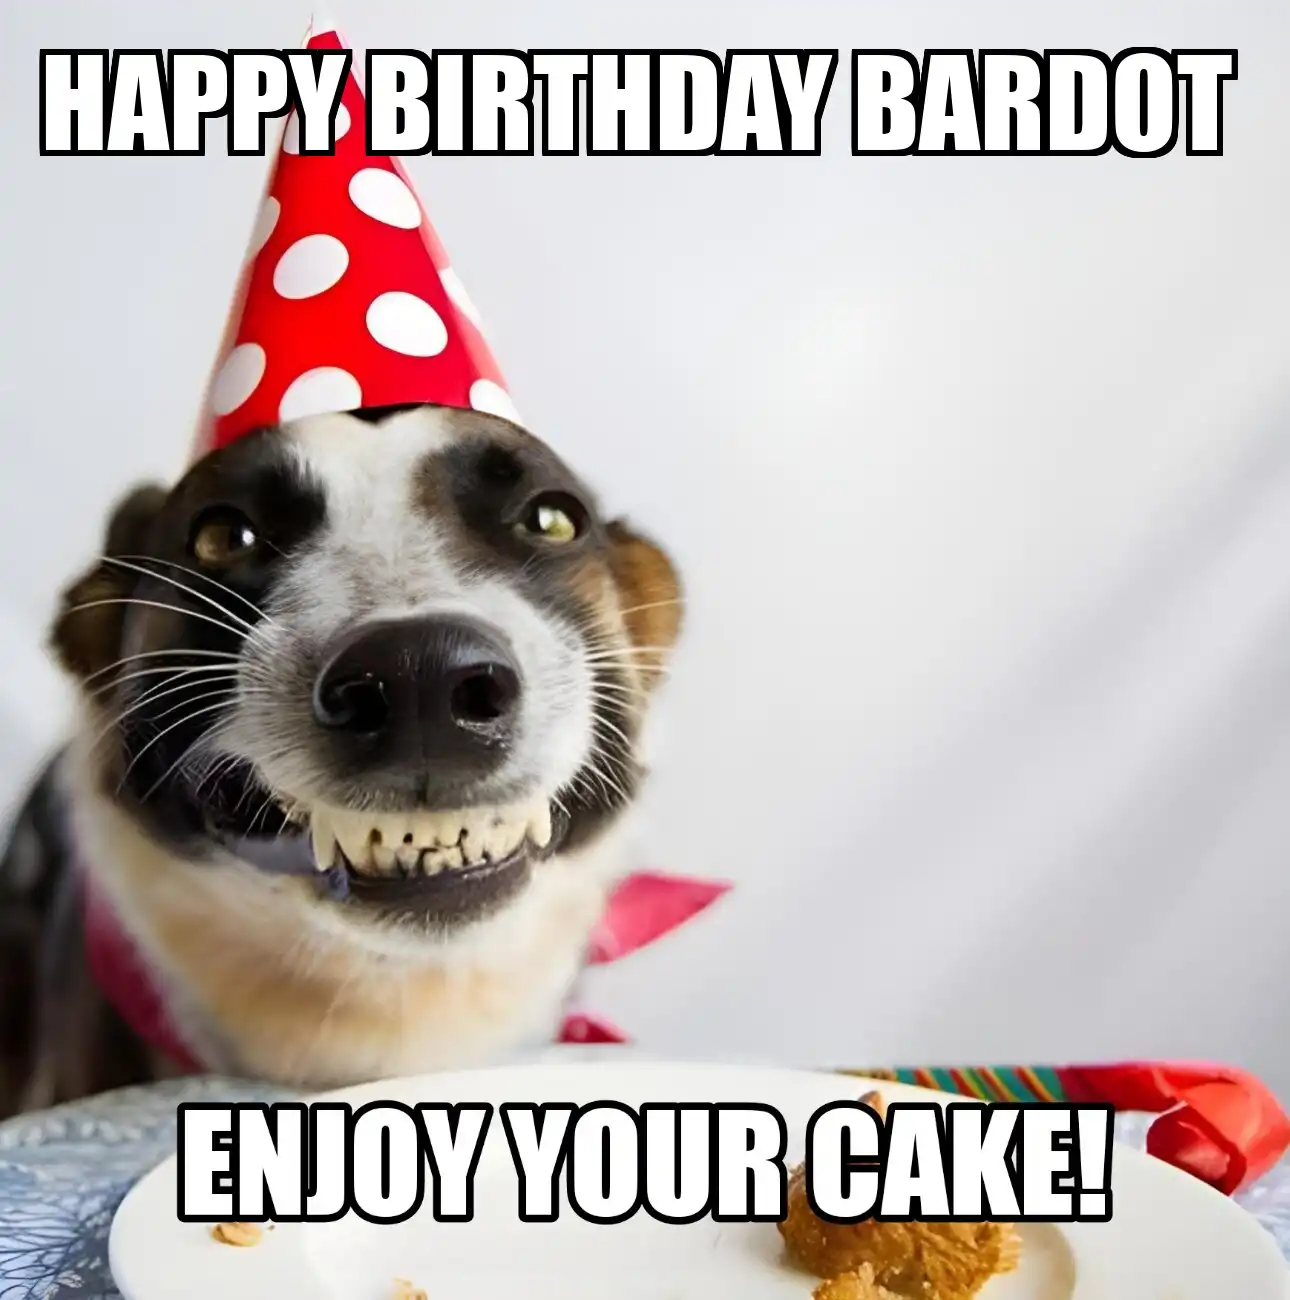 Happy Birthday Bardot Enjoy Your Cake Dog Meme